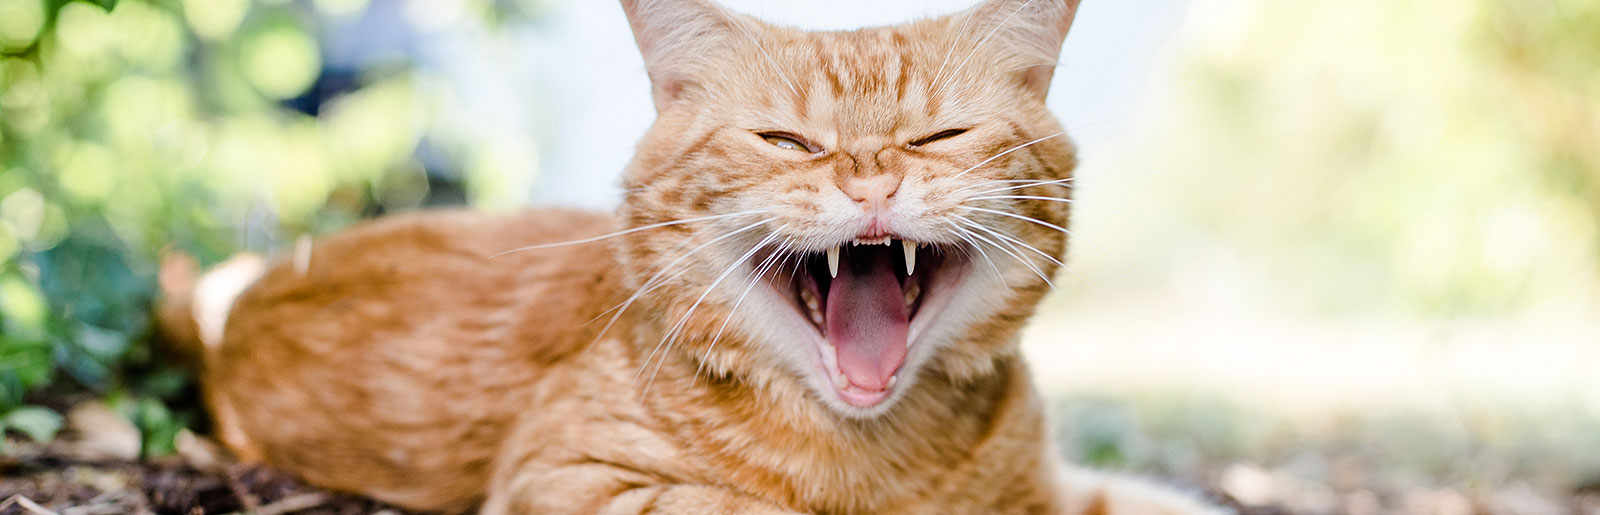 Katze hat Zahnprobleme